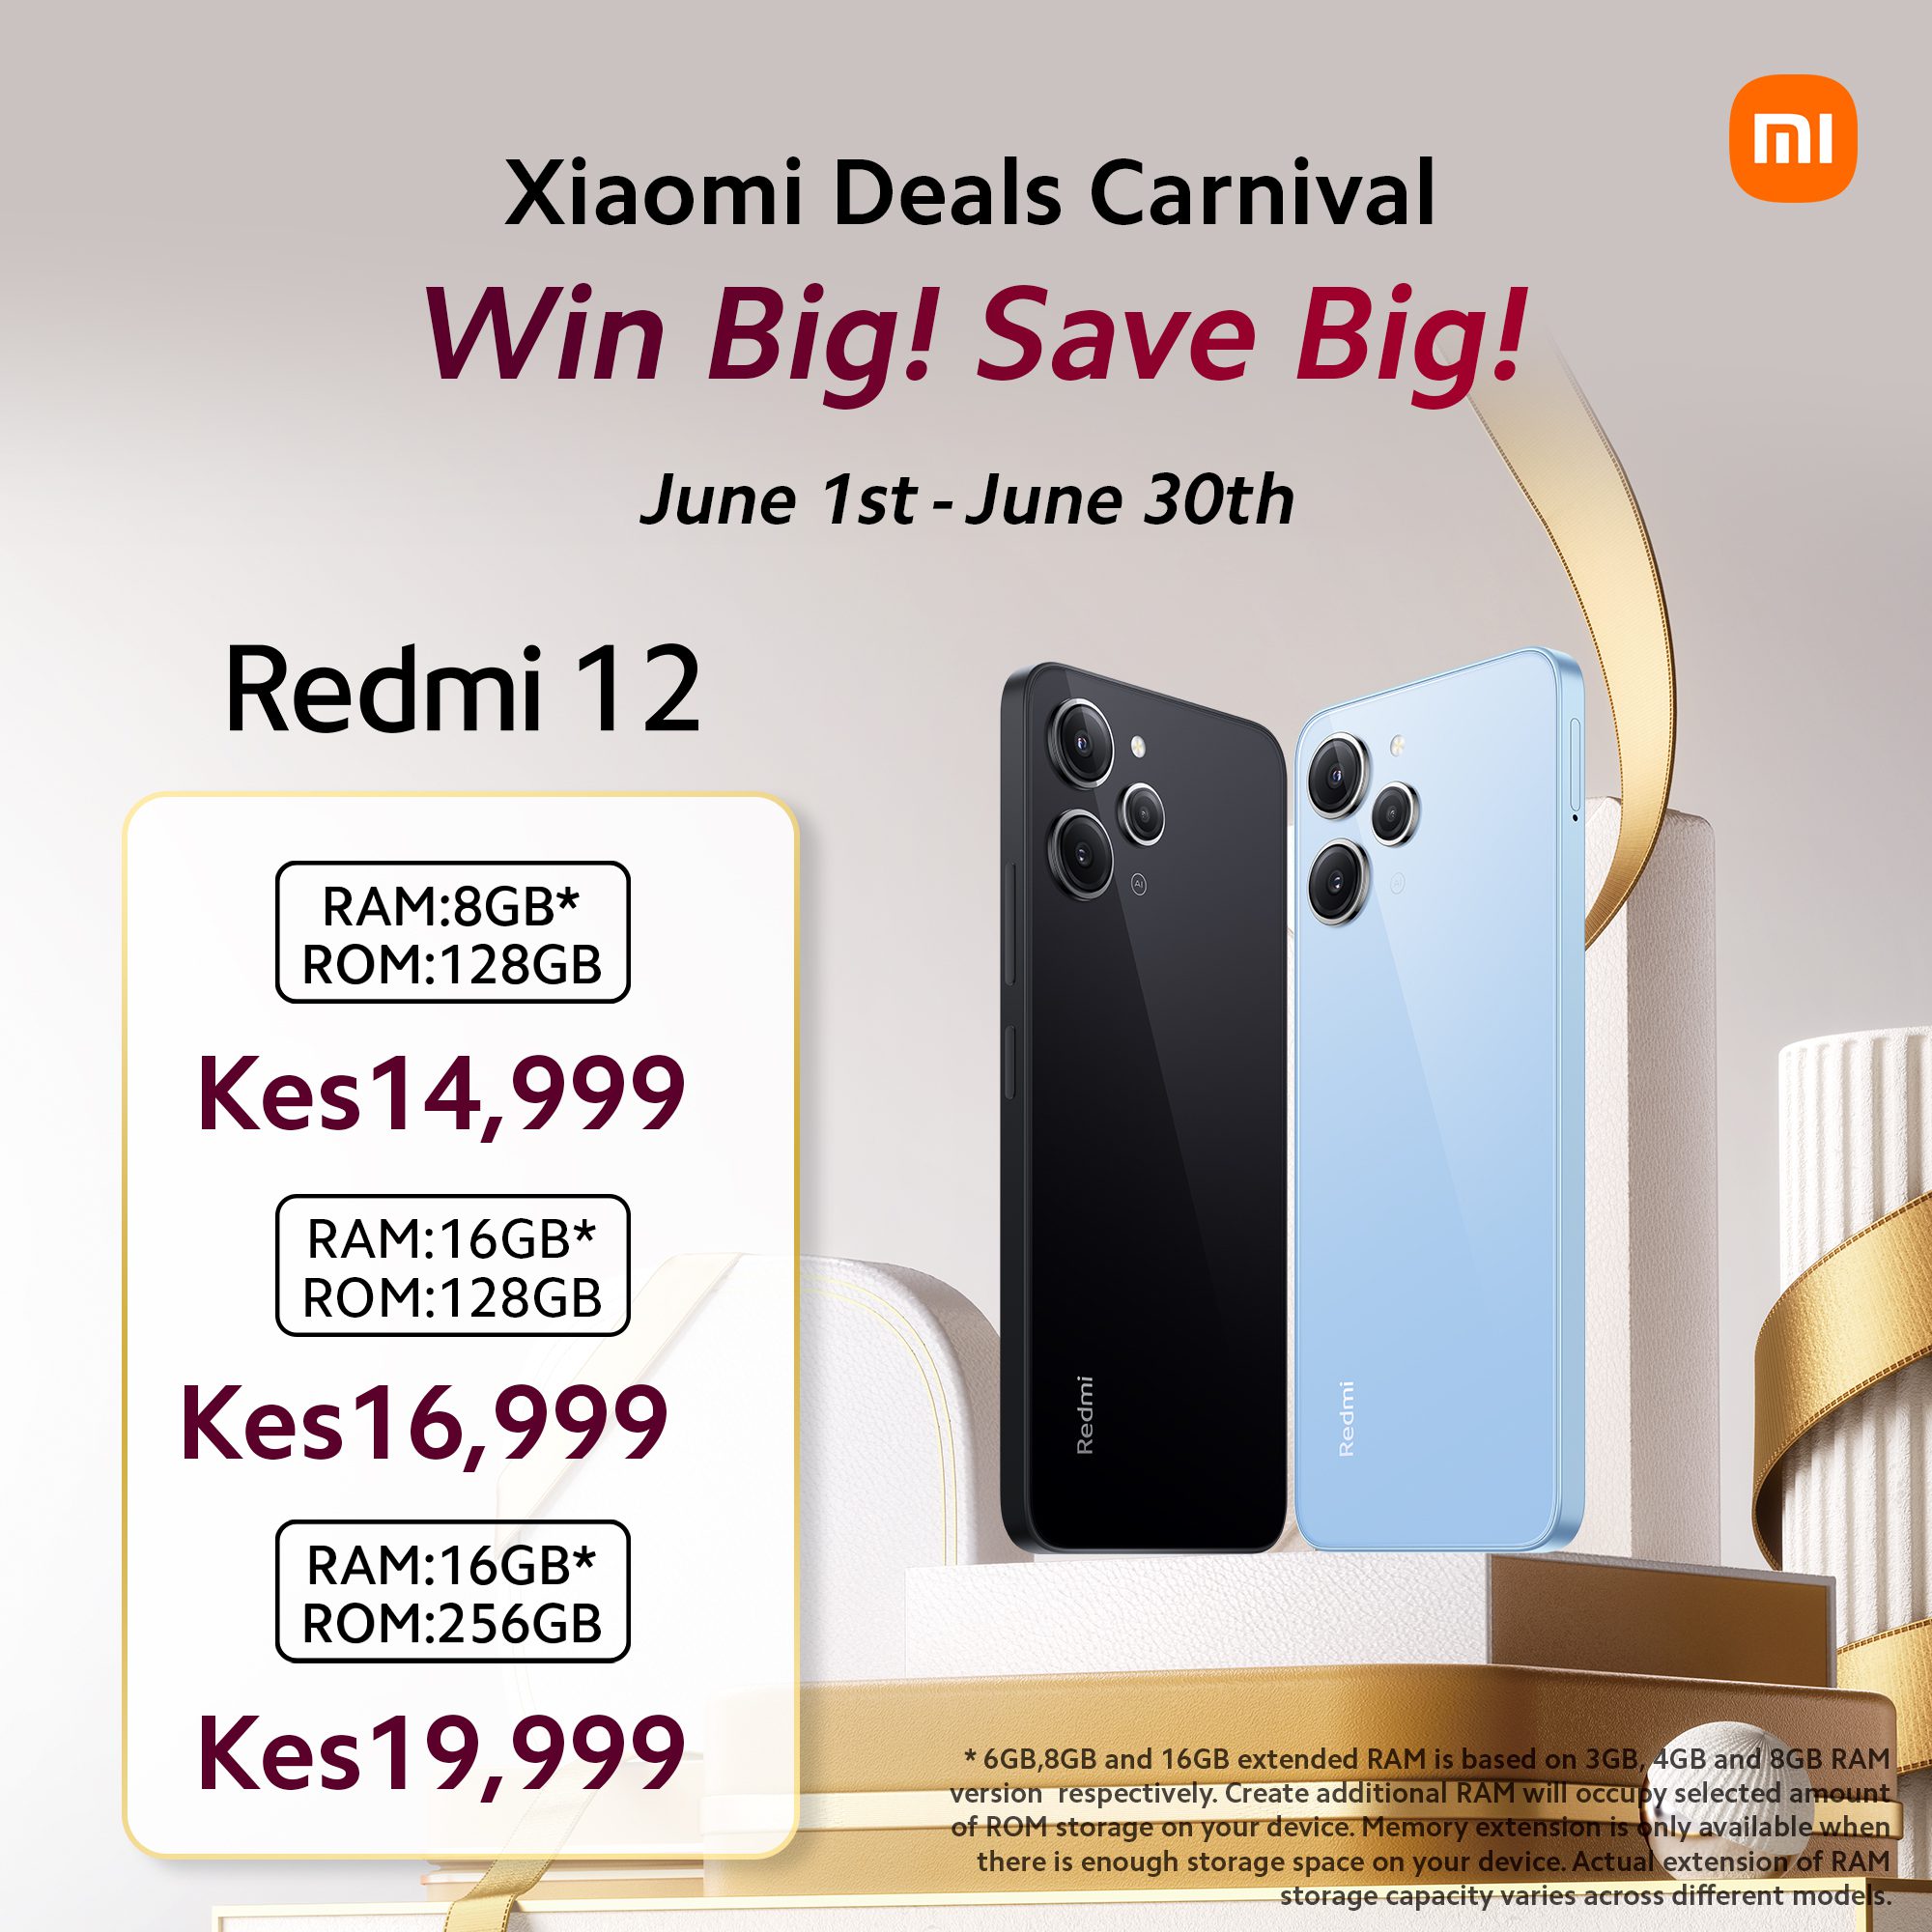 Xiaomi Kenya Launches “Xiaomi Deals Carnival”: Massive Discounts on Smartphones this June